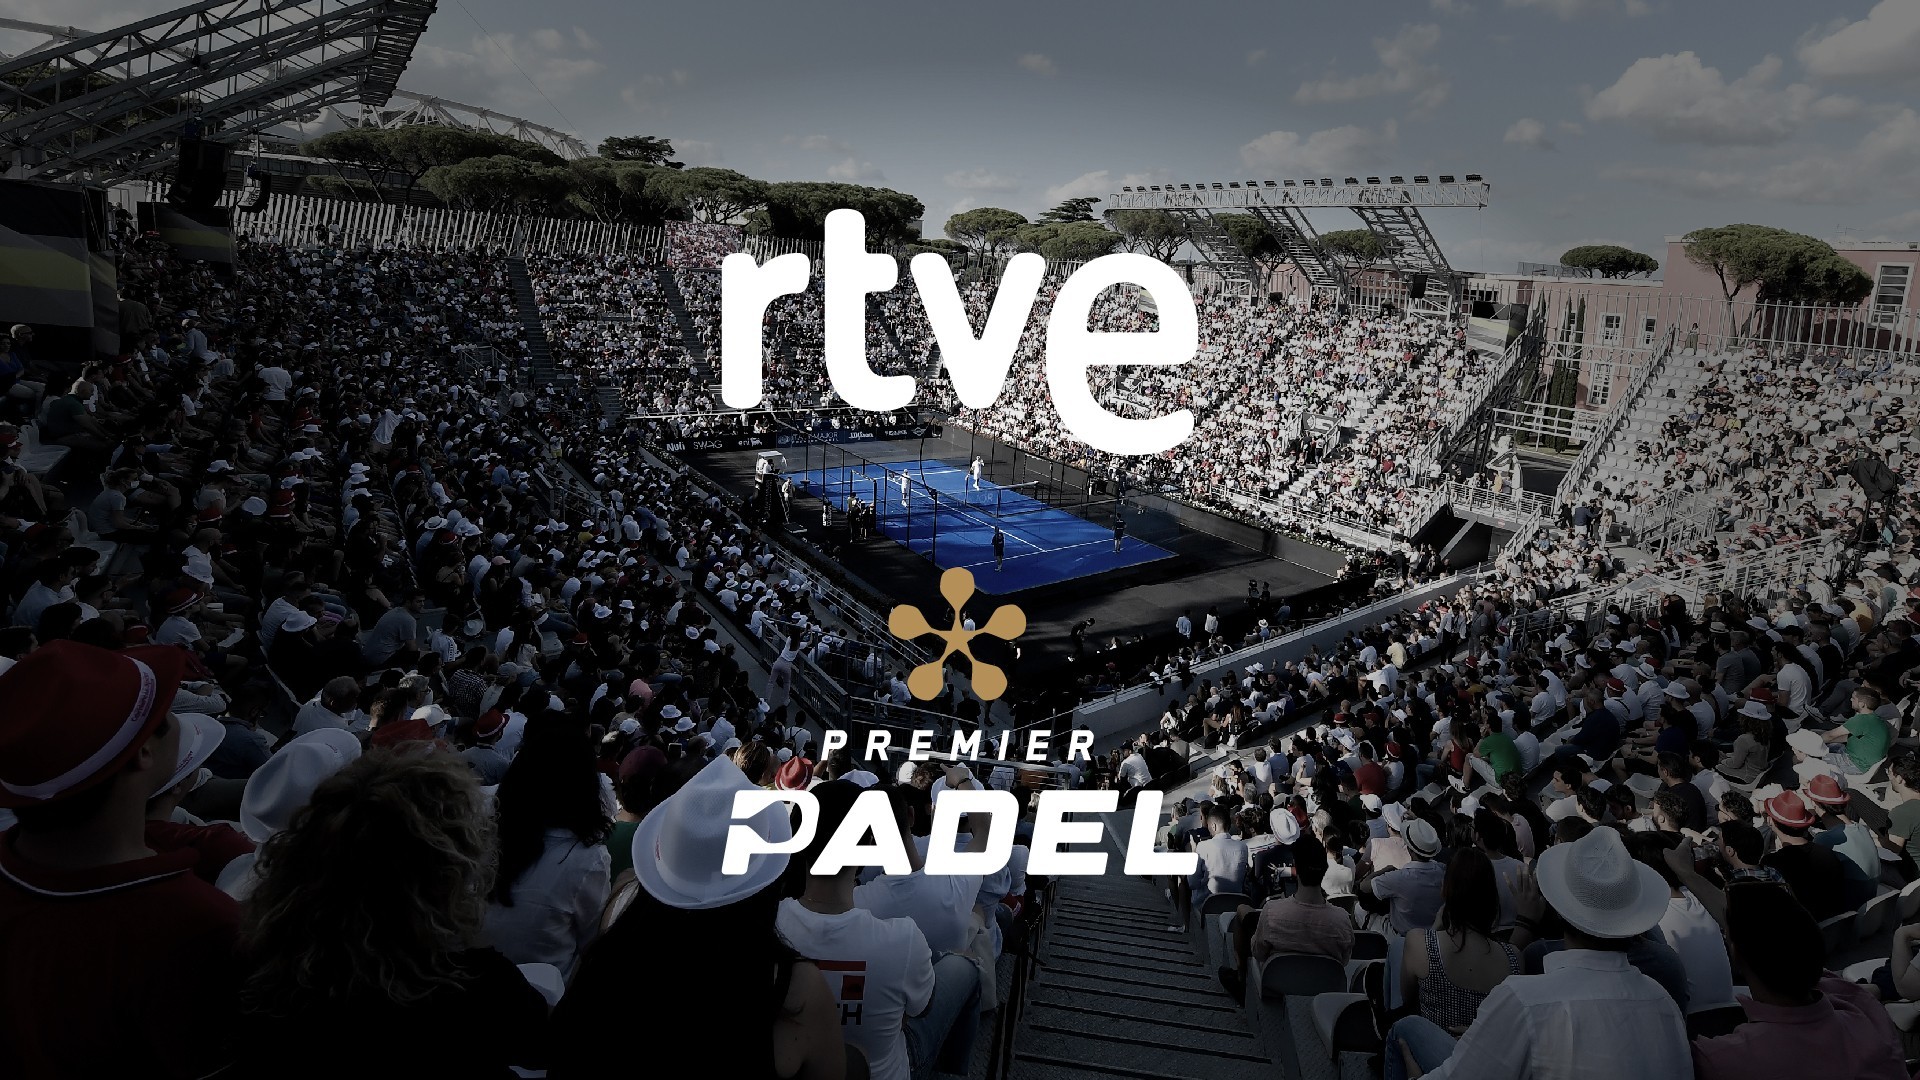 El circuito Premier Pádel será retransmitido en España por RTVE